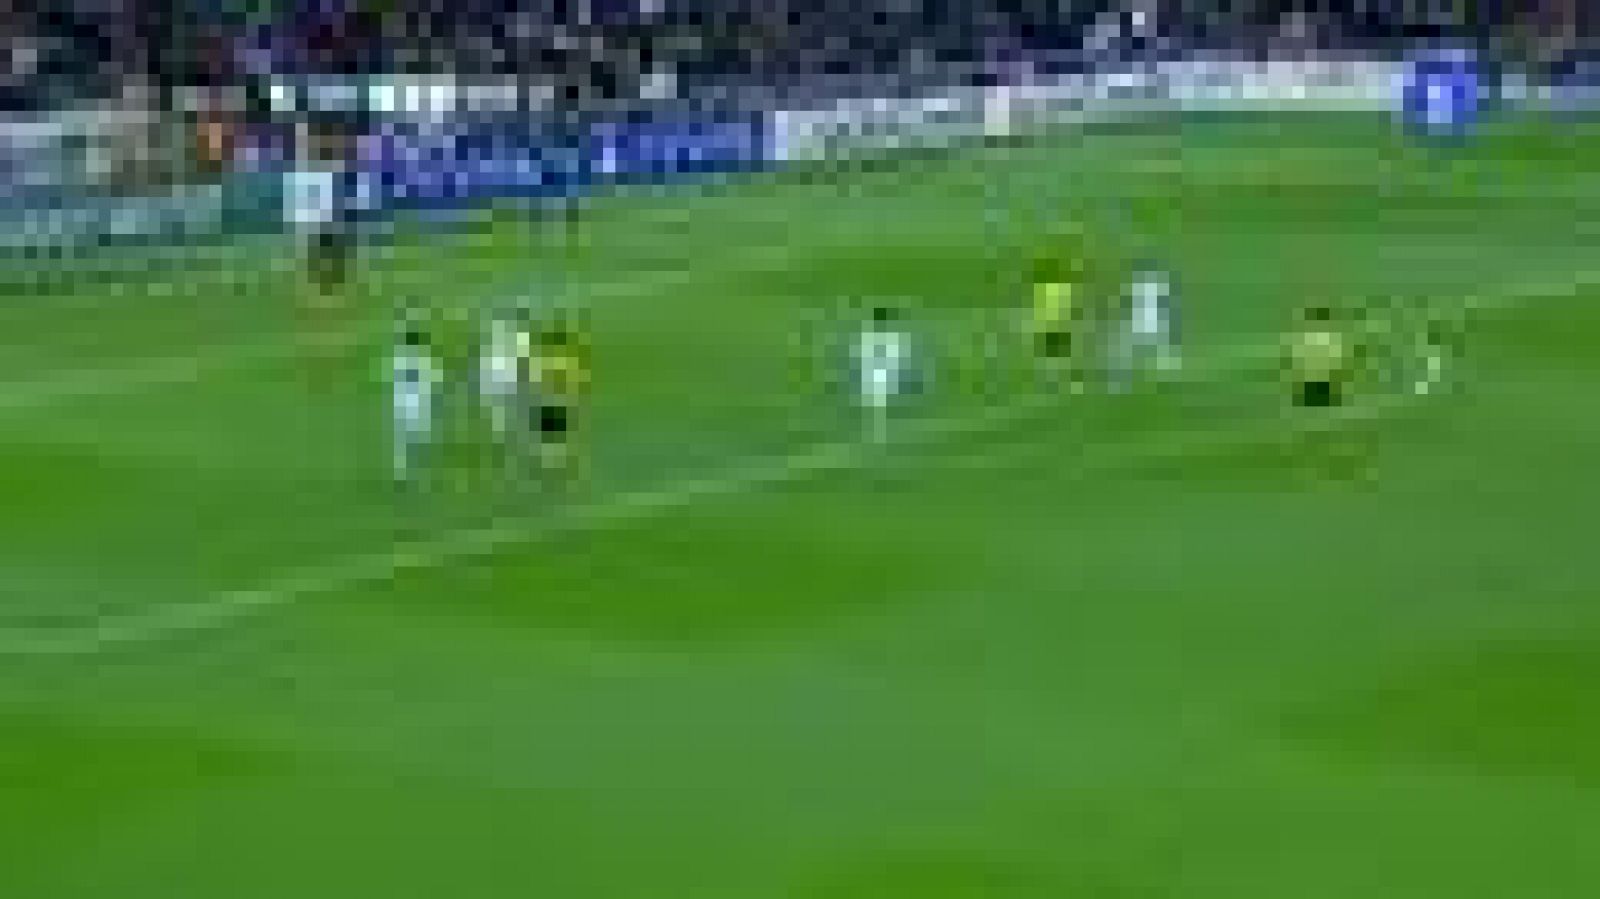 Casi con el tiempo cumplido y a punto de ir al descanso, Álvaro Arbeloa ha introducido el balón en la portería de Casillas y el Borussia se ha puesto de nuevo por delante en el marcador 